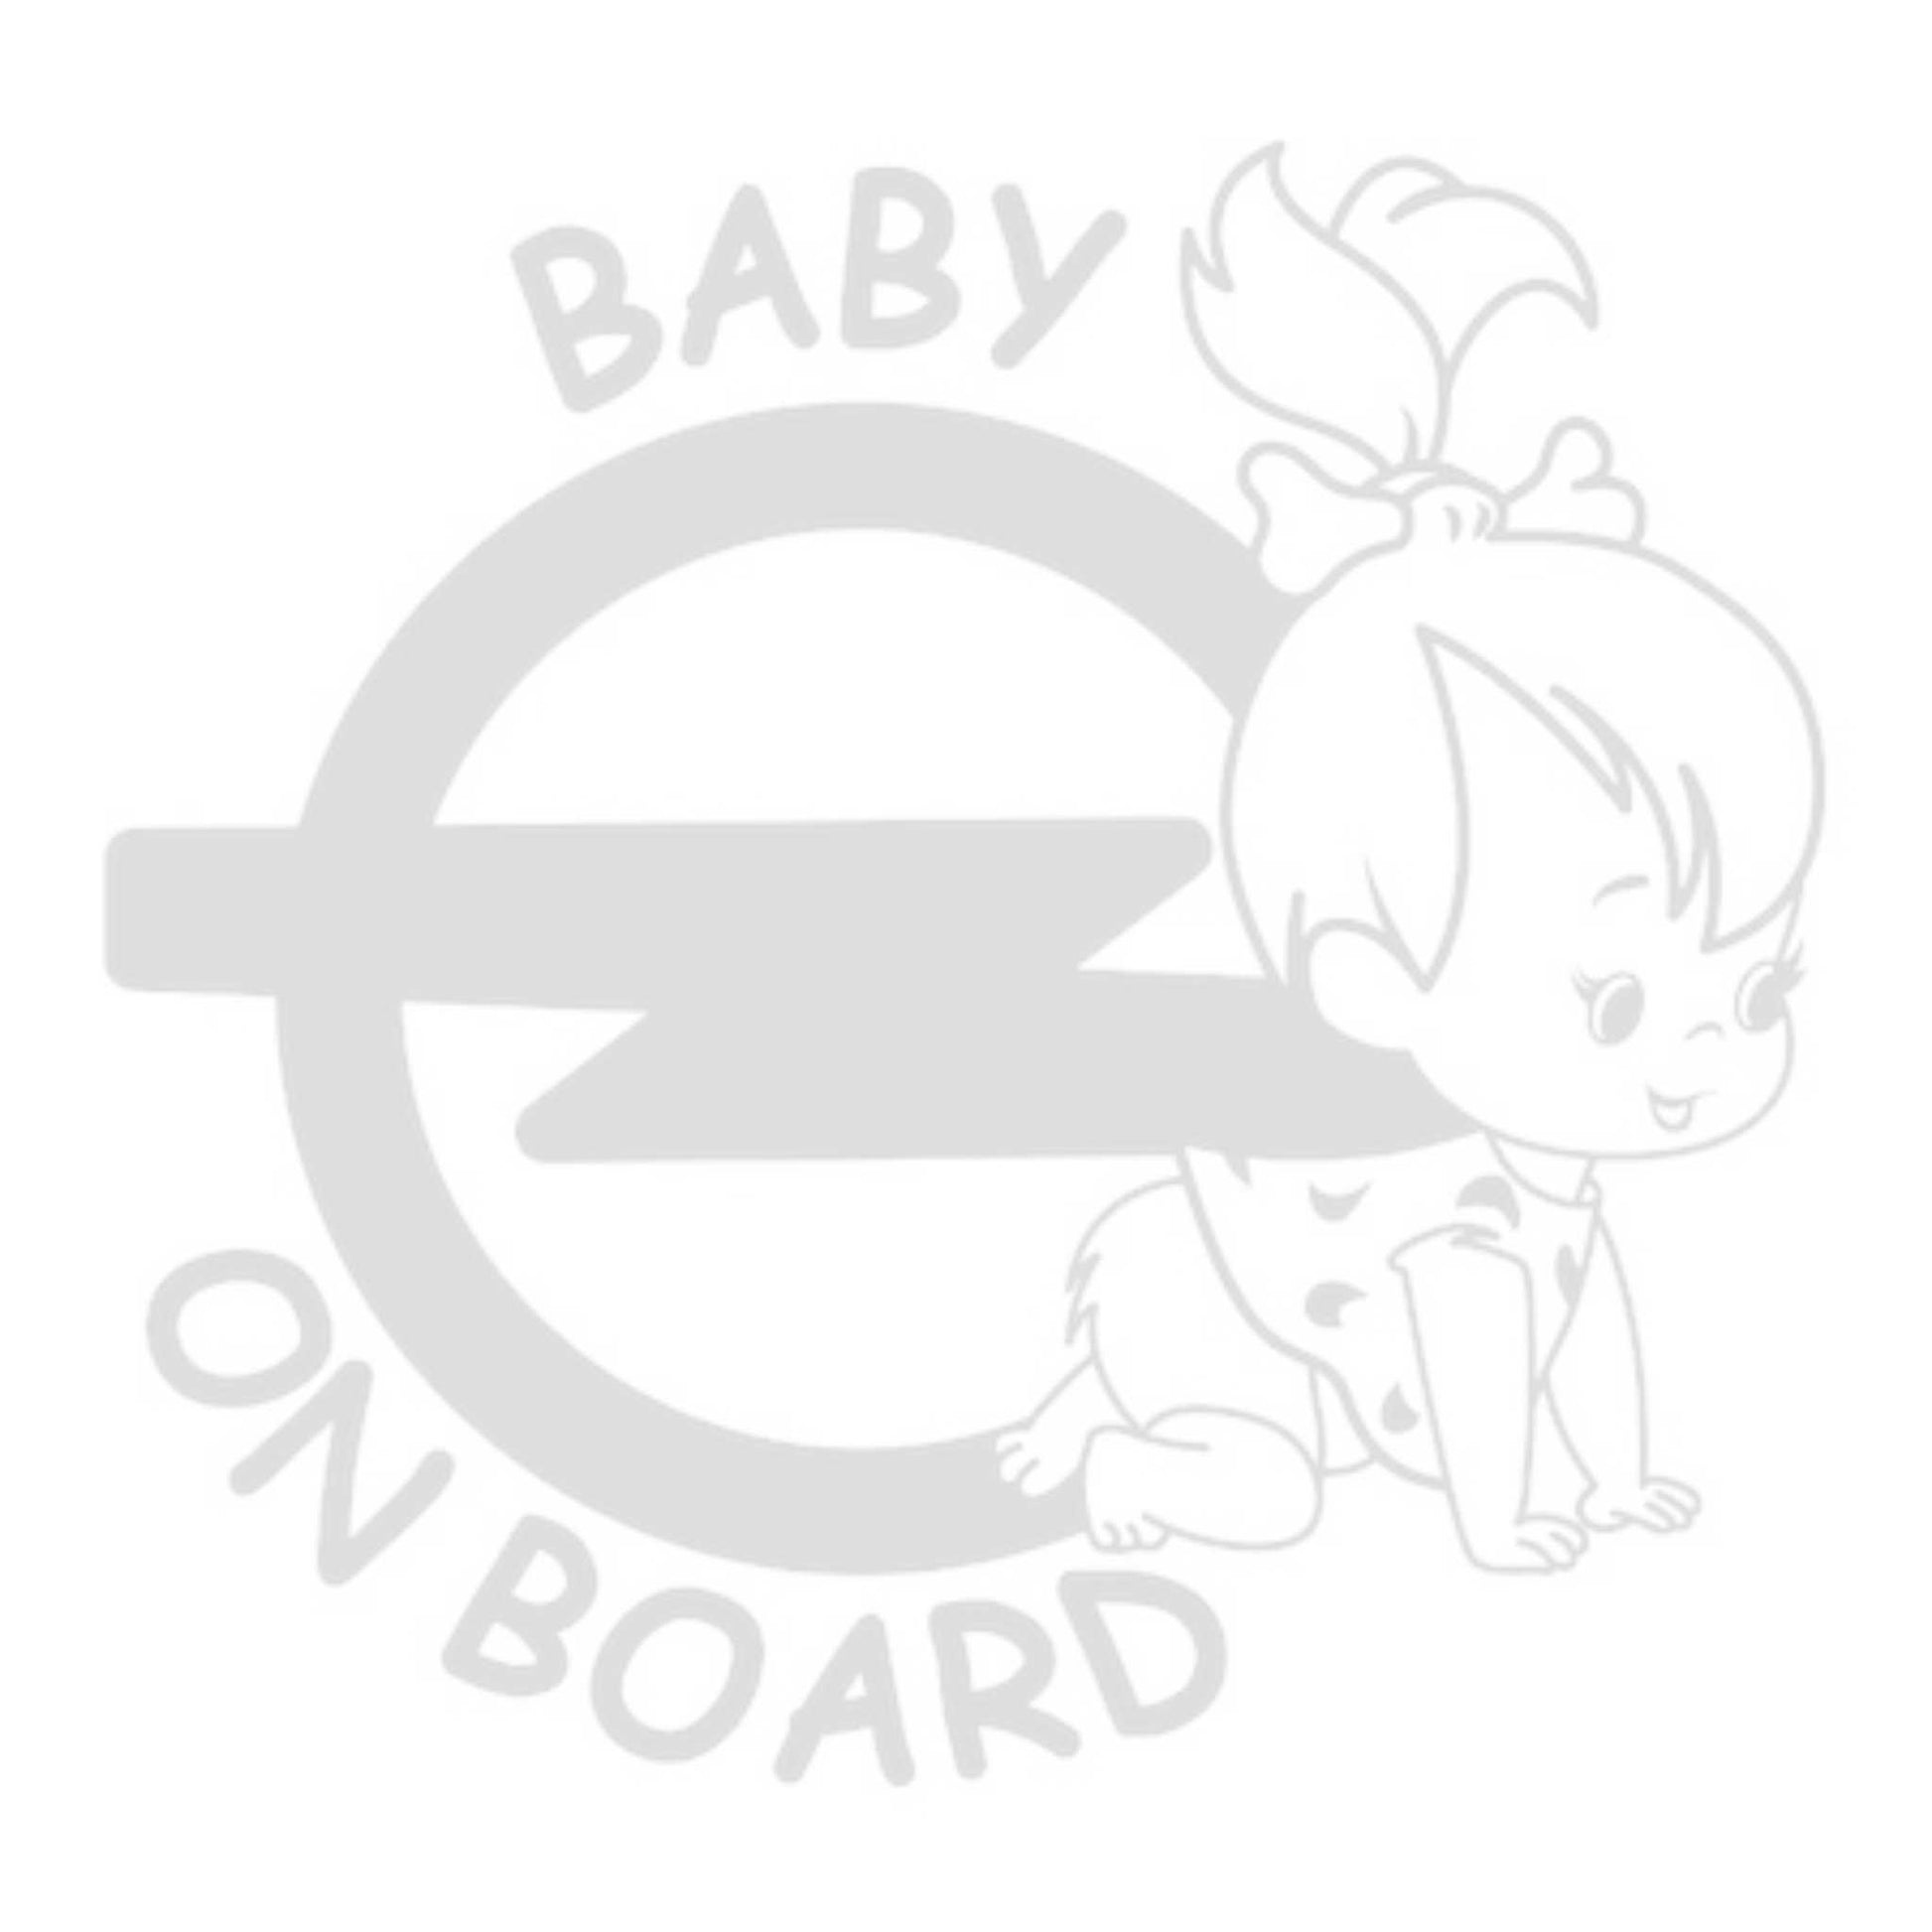 Sticker auto Baby on board, fetita, alb, rezistent la apa si sgarieturi. Stickere baby on board cu aplicare usoara.